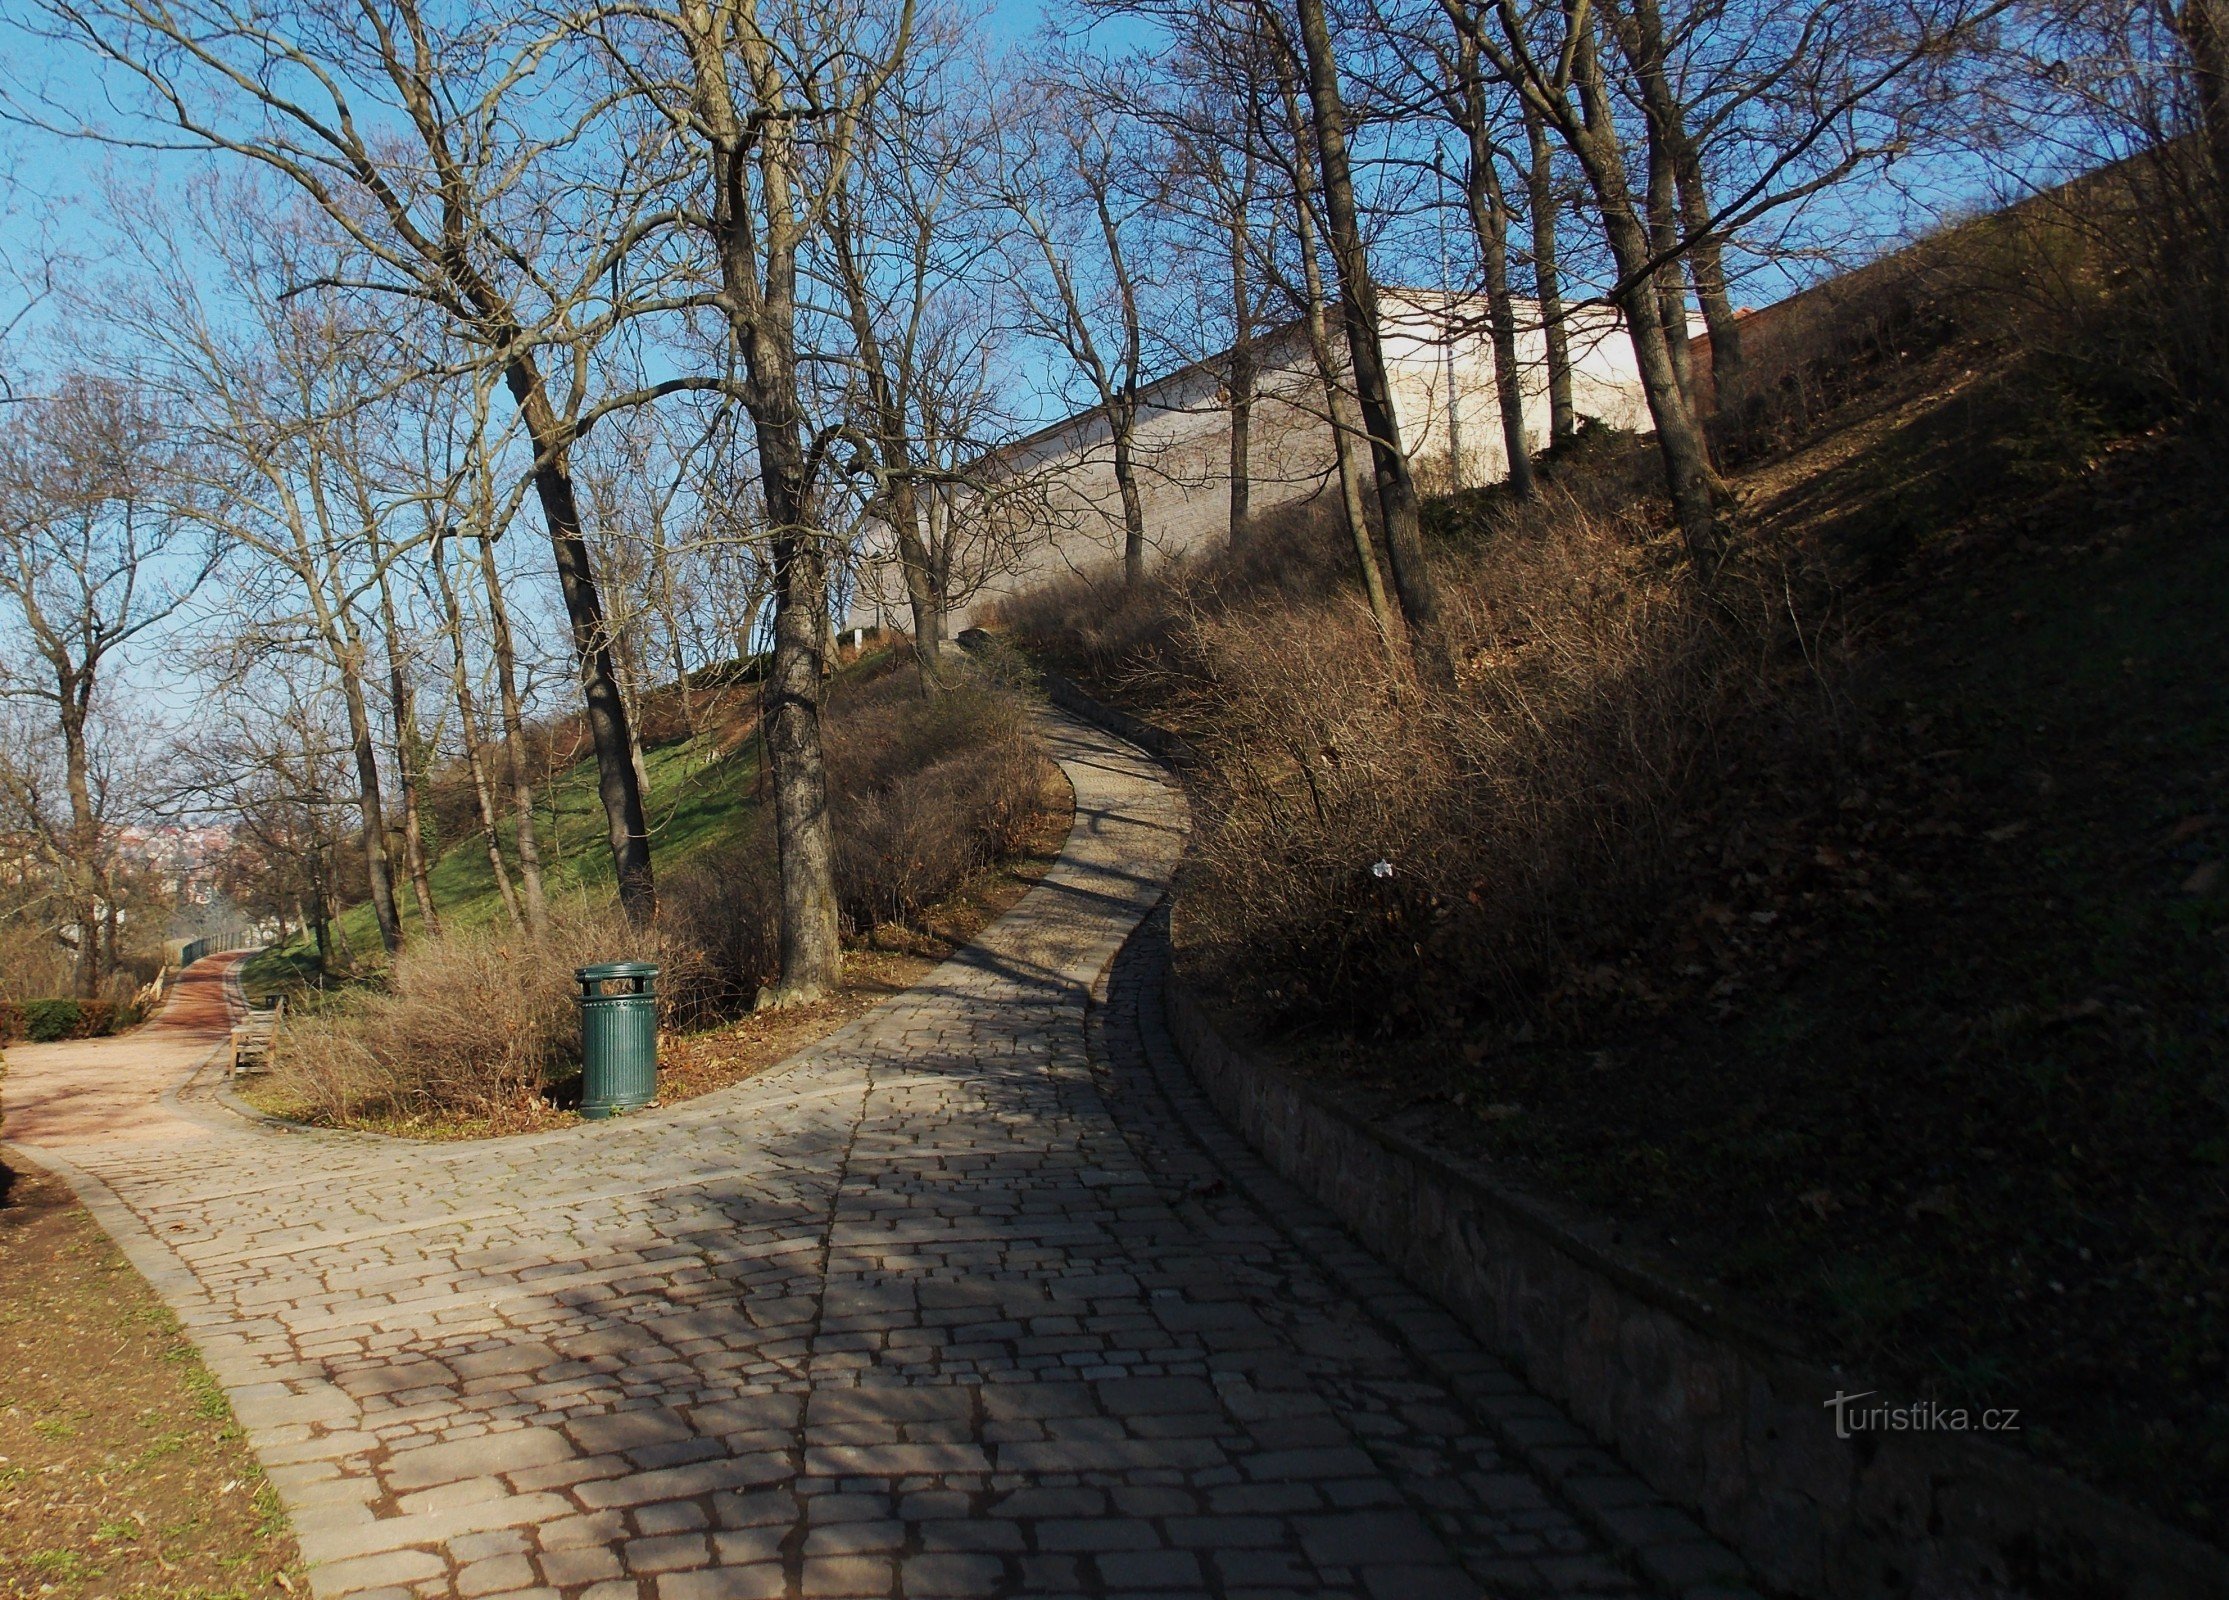 En gåtur gennem byparken Špilberk i Brno